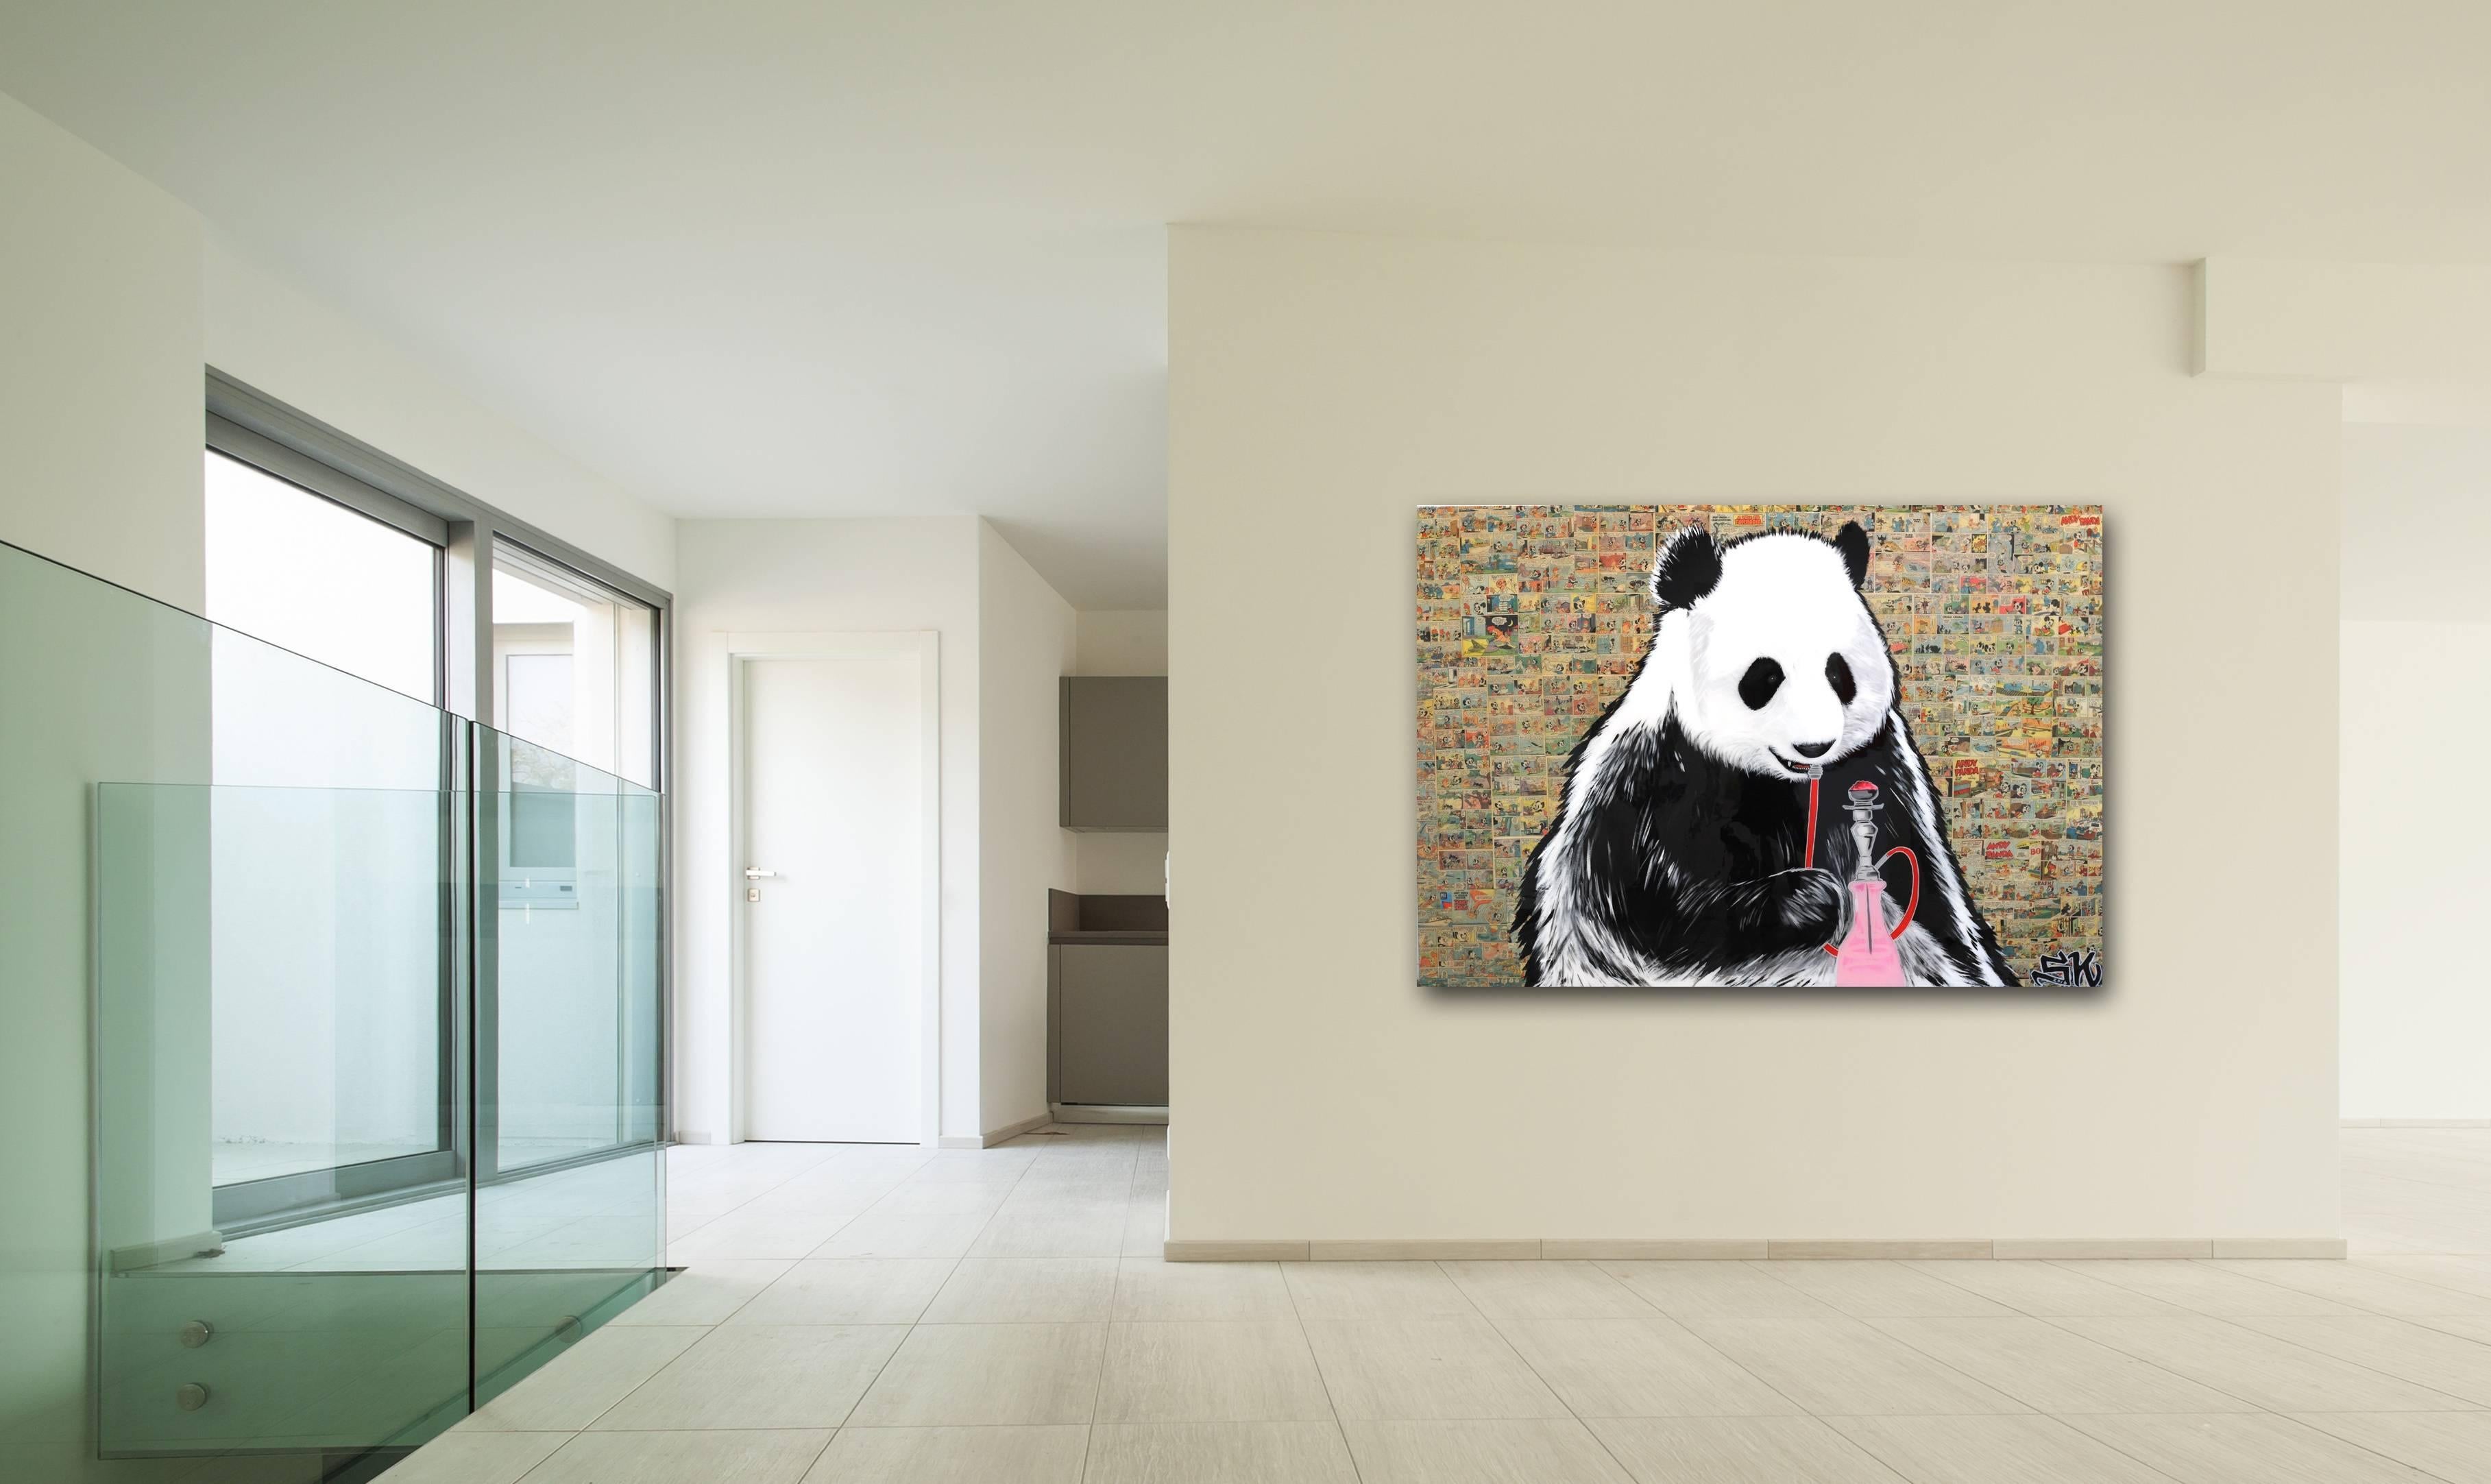 Panda Express - Painting by Sean Keith